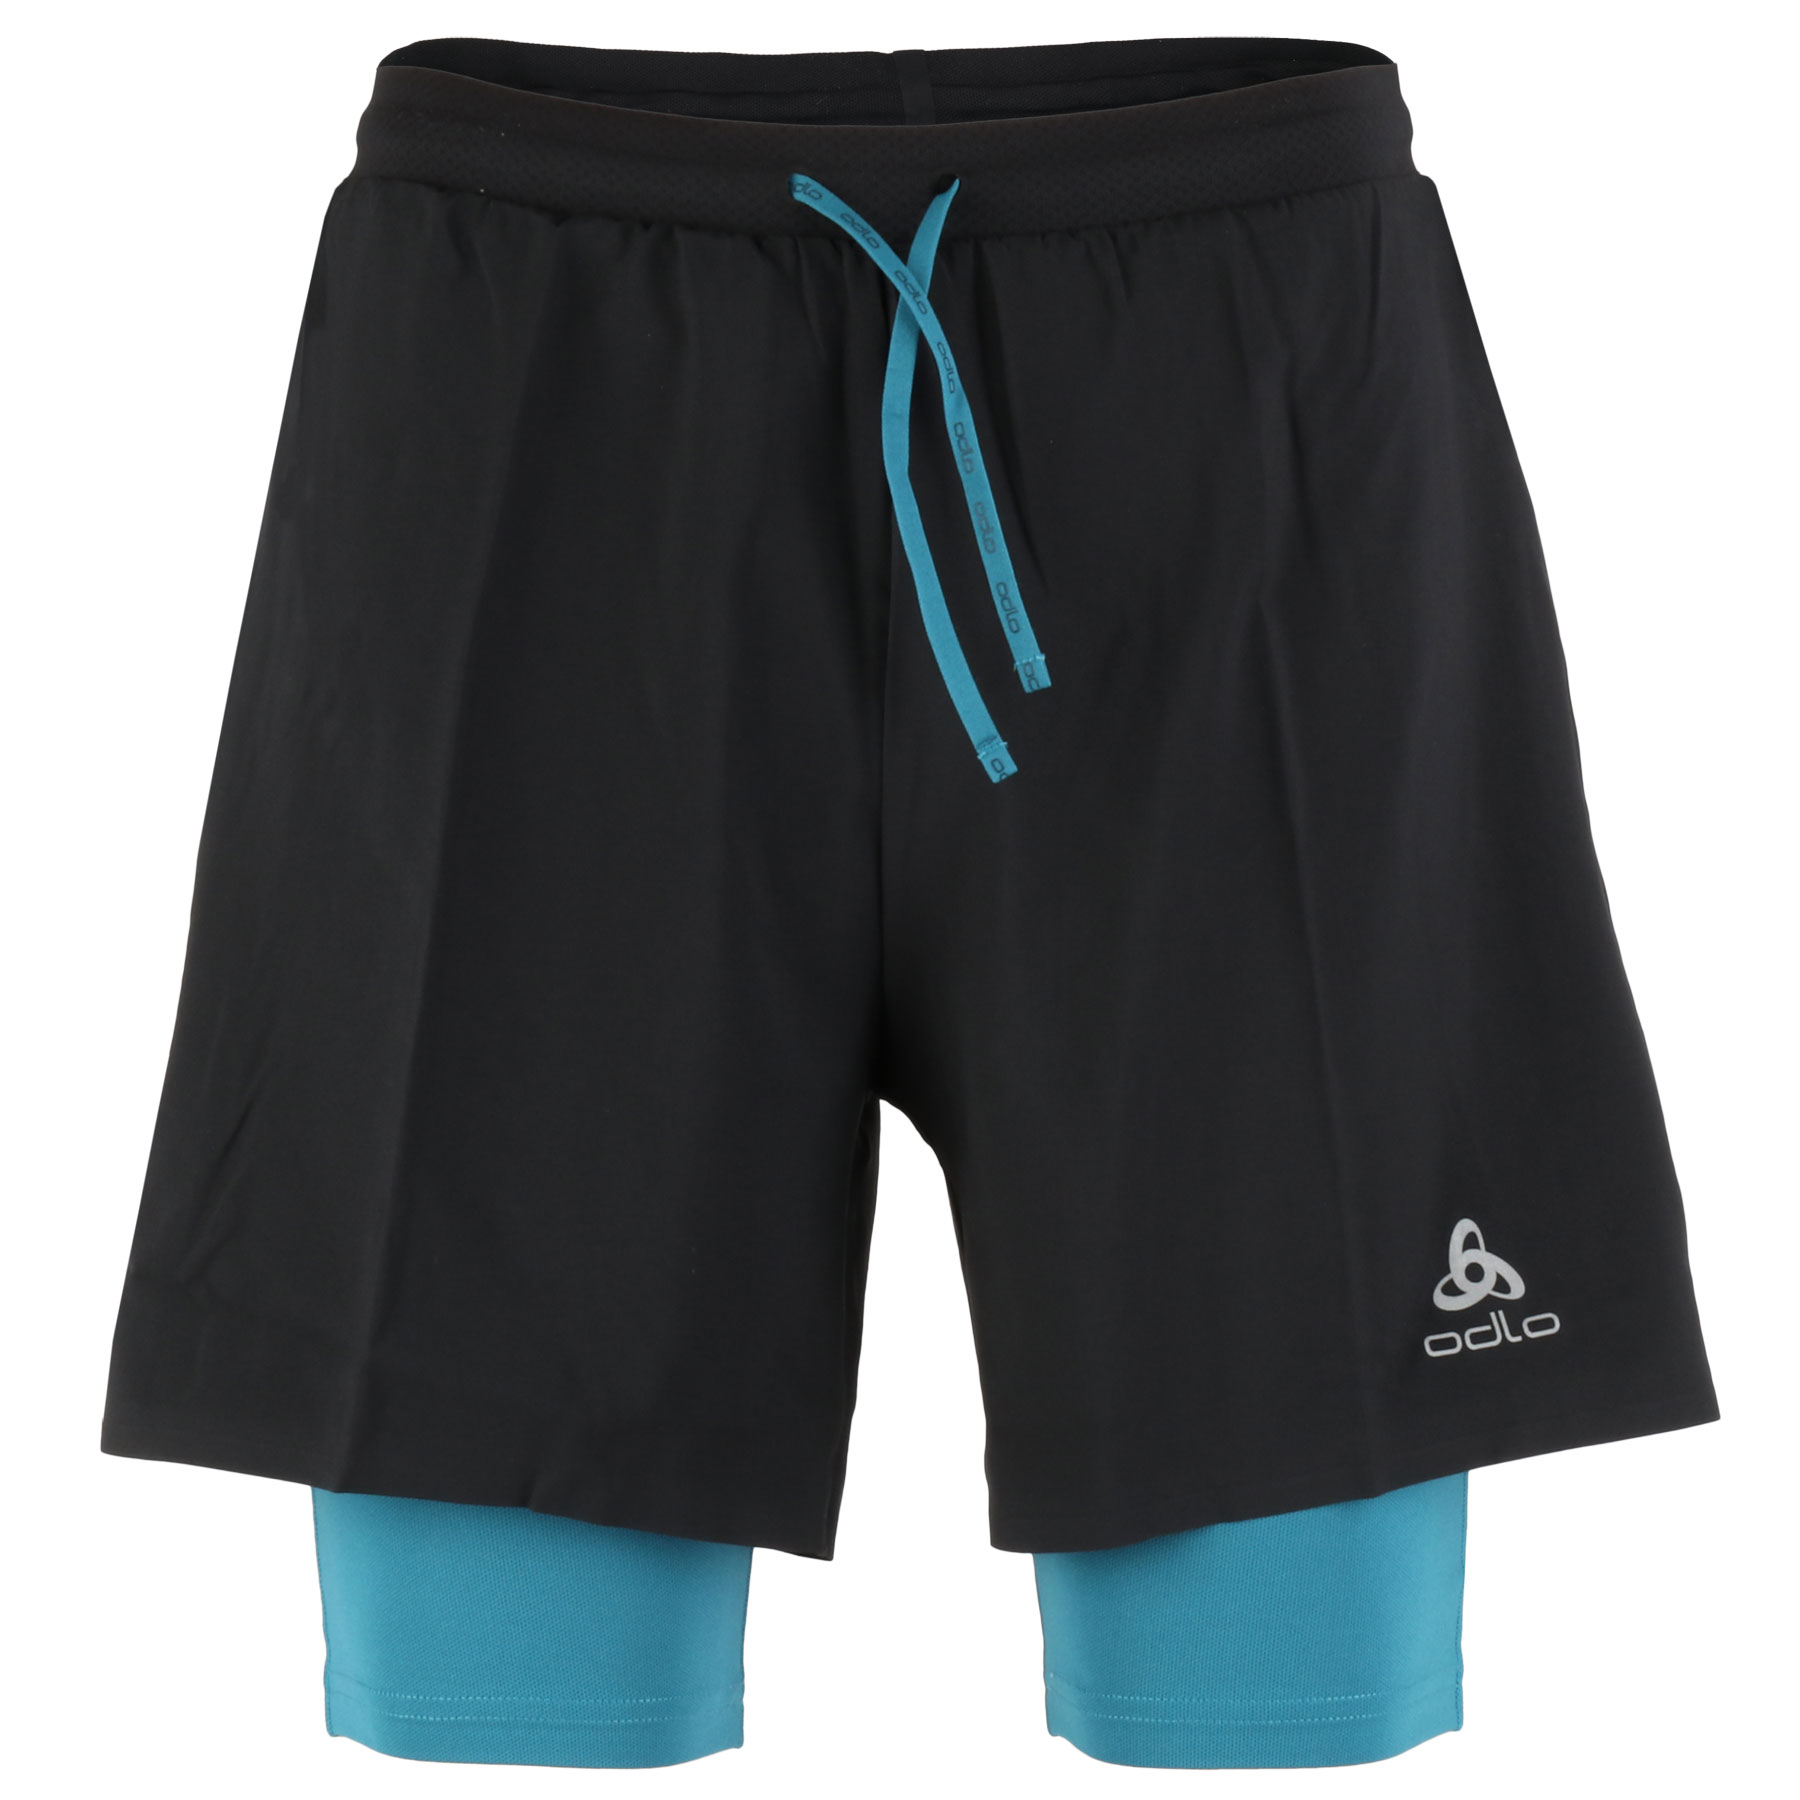 Produktbild von Odlo Herren X-Alp 6 Inch 2-in-1 Trailrunning-Shorts - schwarz - saxony blue